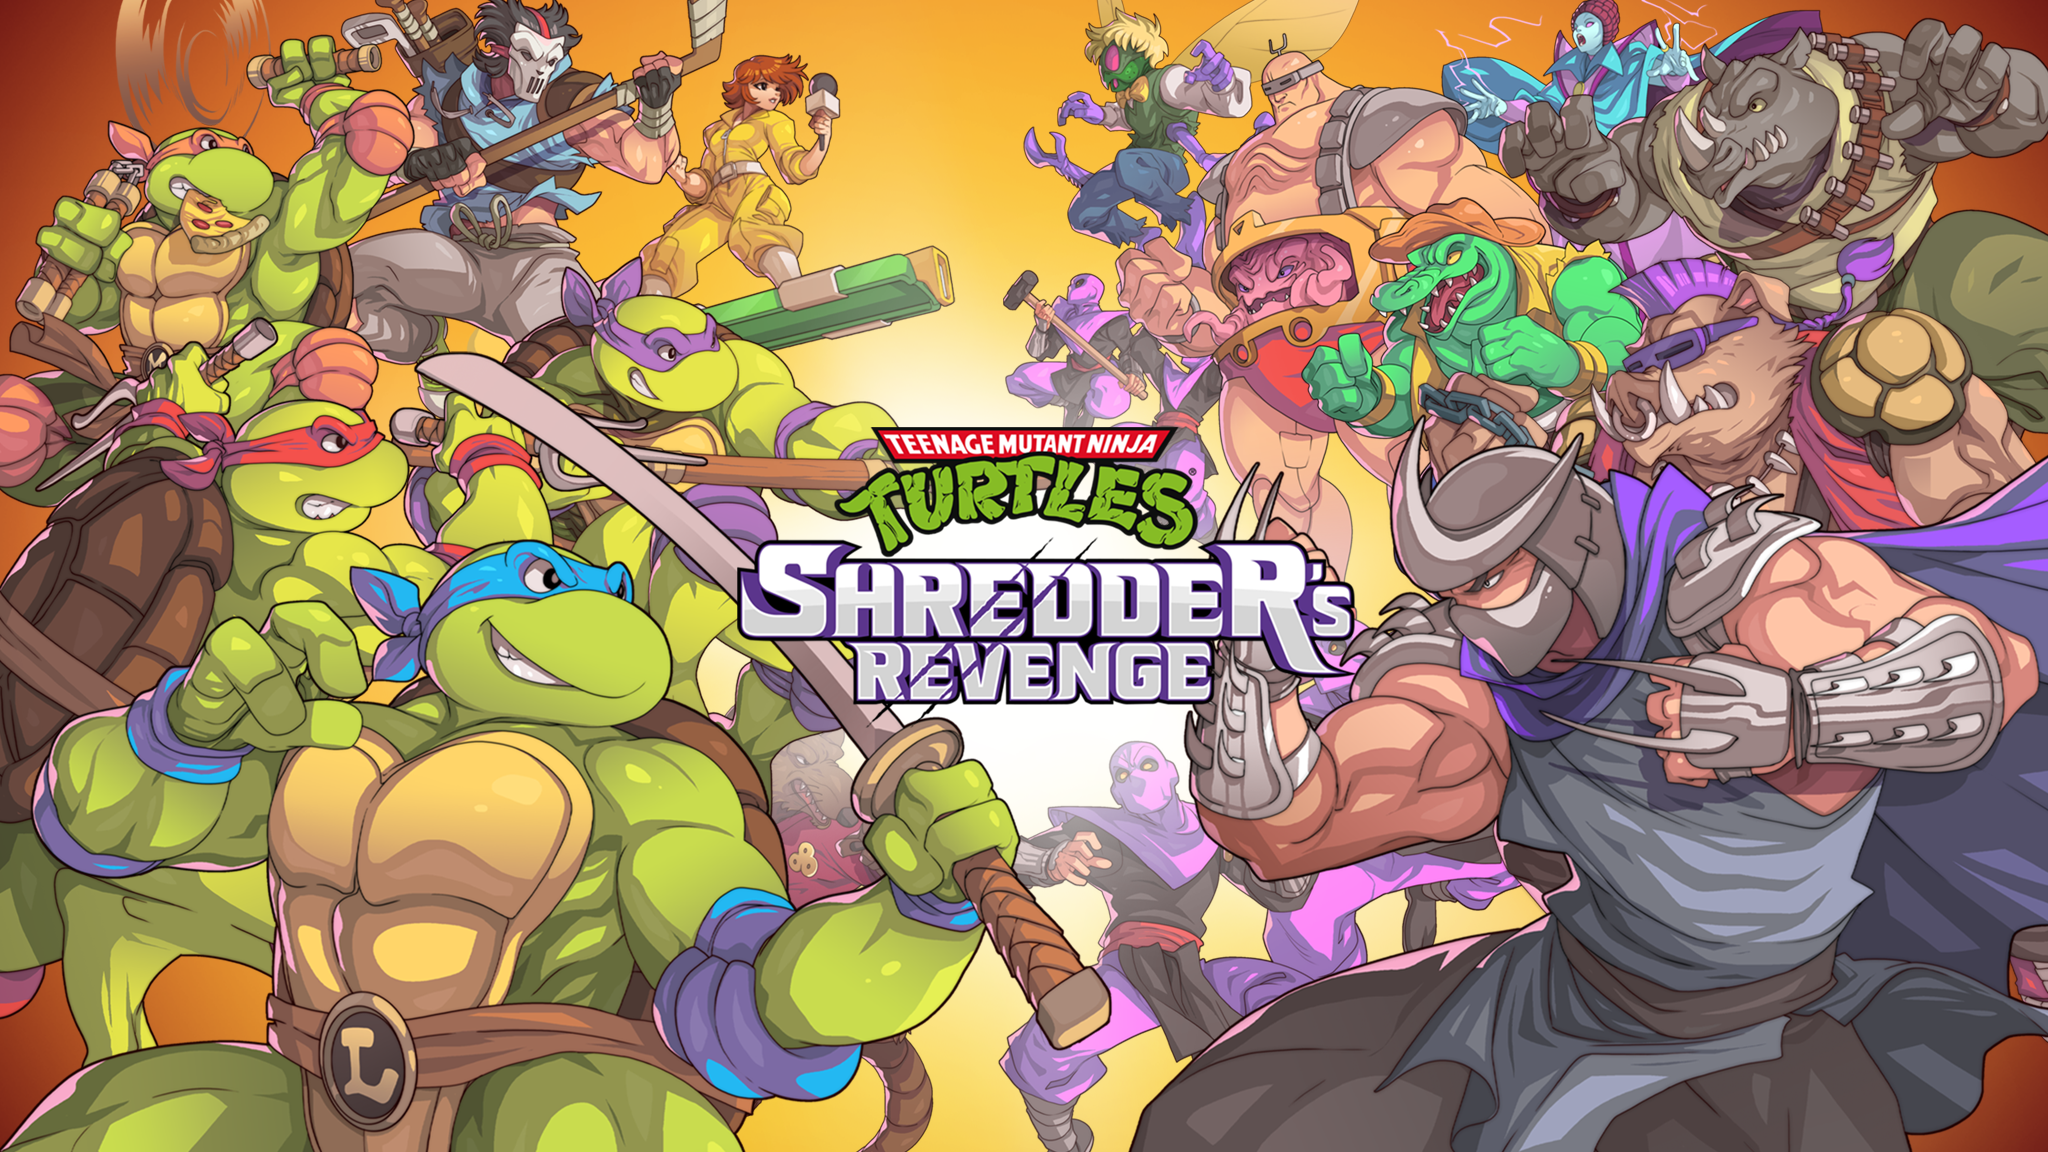 Turtles Shredder Revenge. TMNT Shredder s Revenge. TMNT Shredder Revenge. Игра Черепашки ниндзя месть Шредера. Tmnt shredder revenge на андроид